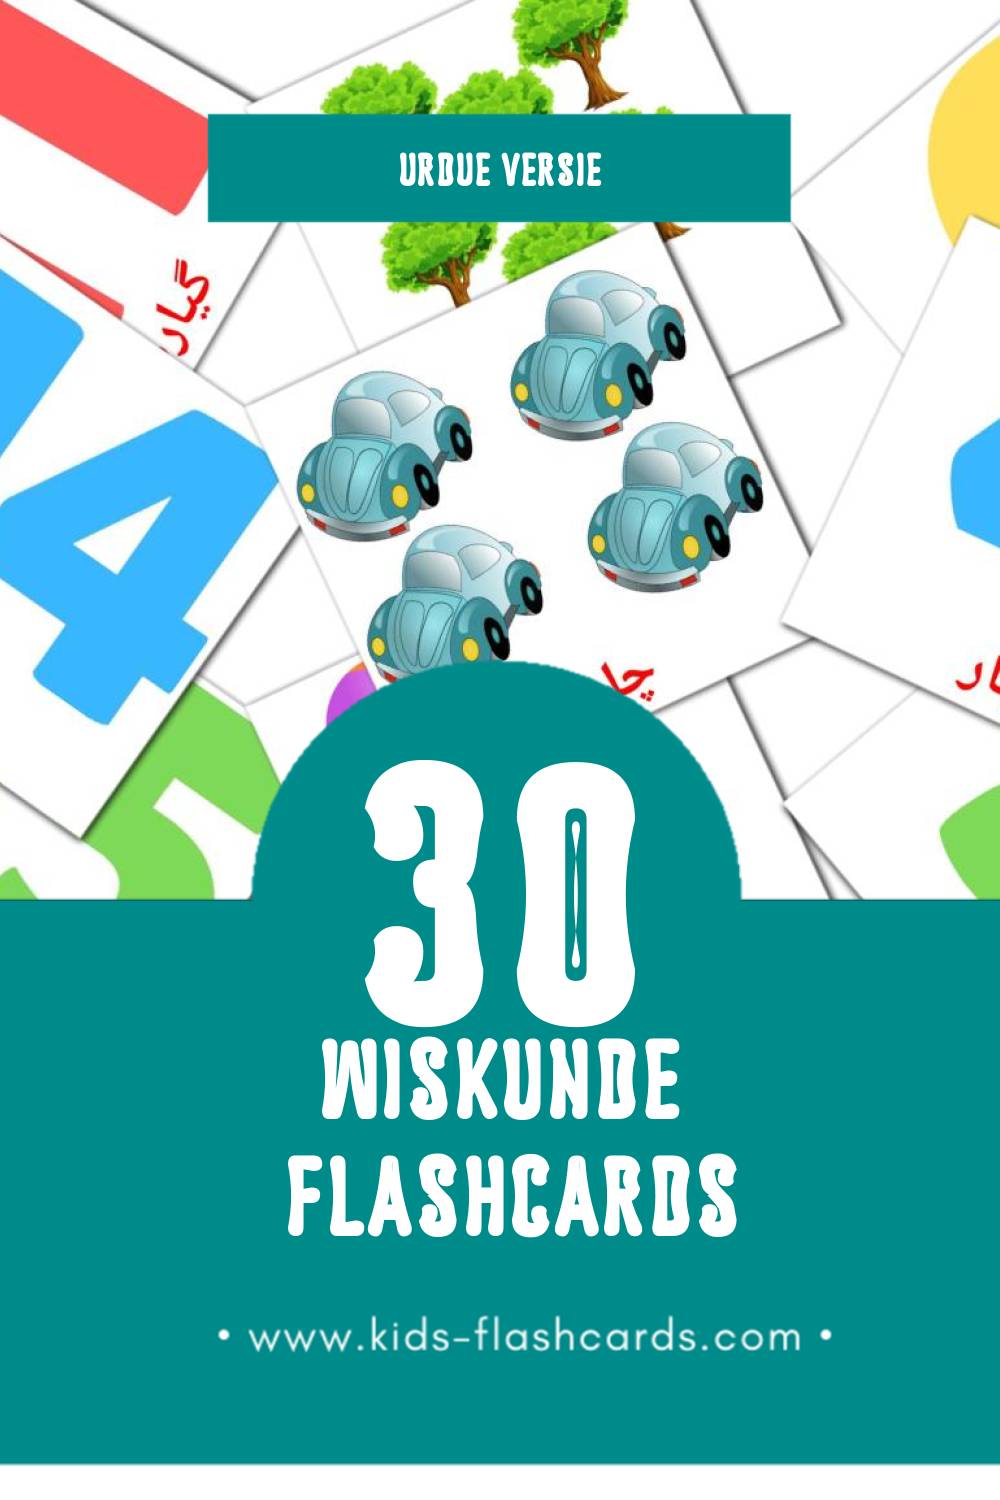 Visuele 1- 10 Flashcards voor Kleuters (30 kaarten in het Urdu)